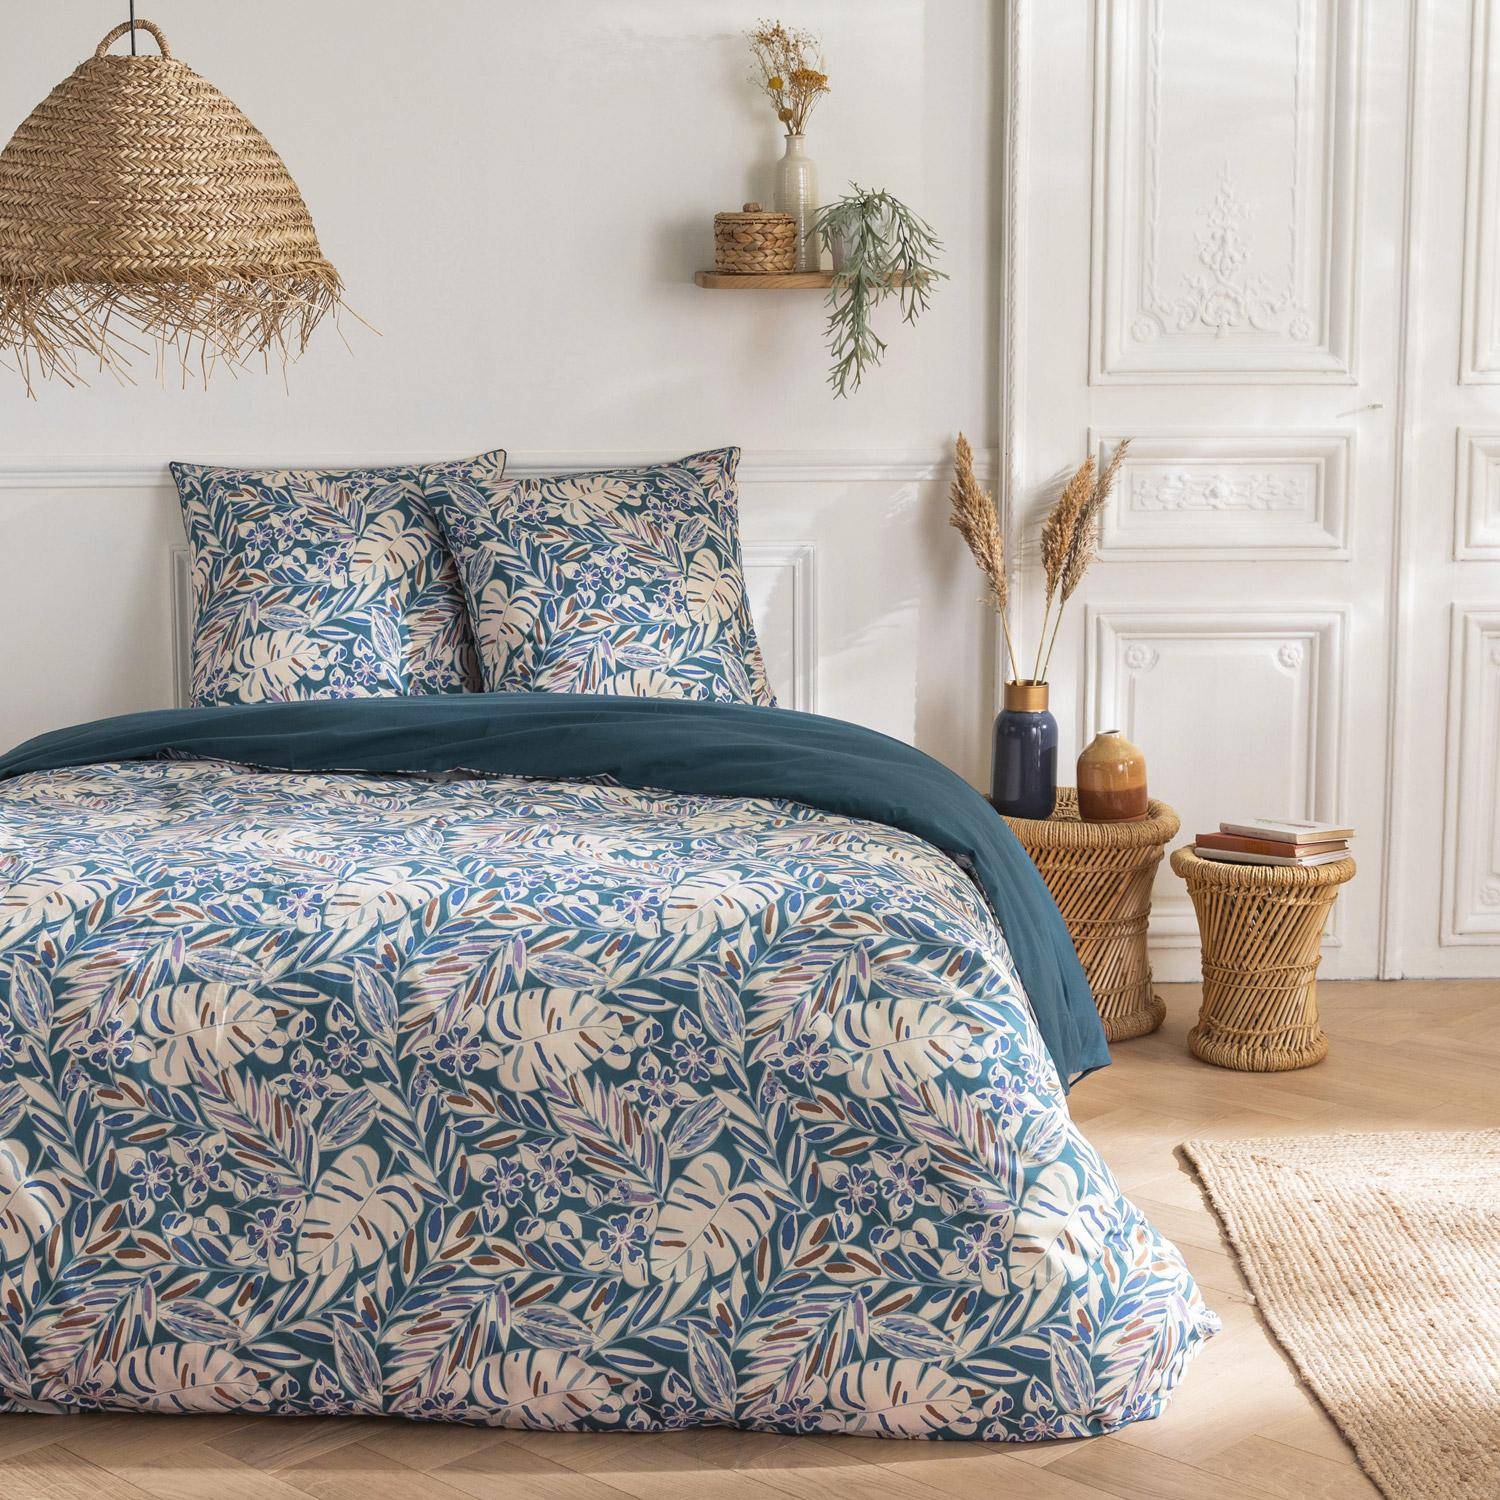 Parure de lit réversible 260x240cm imprimé feuillage bleu et blanc en coton  Photo1